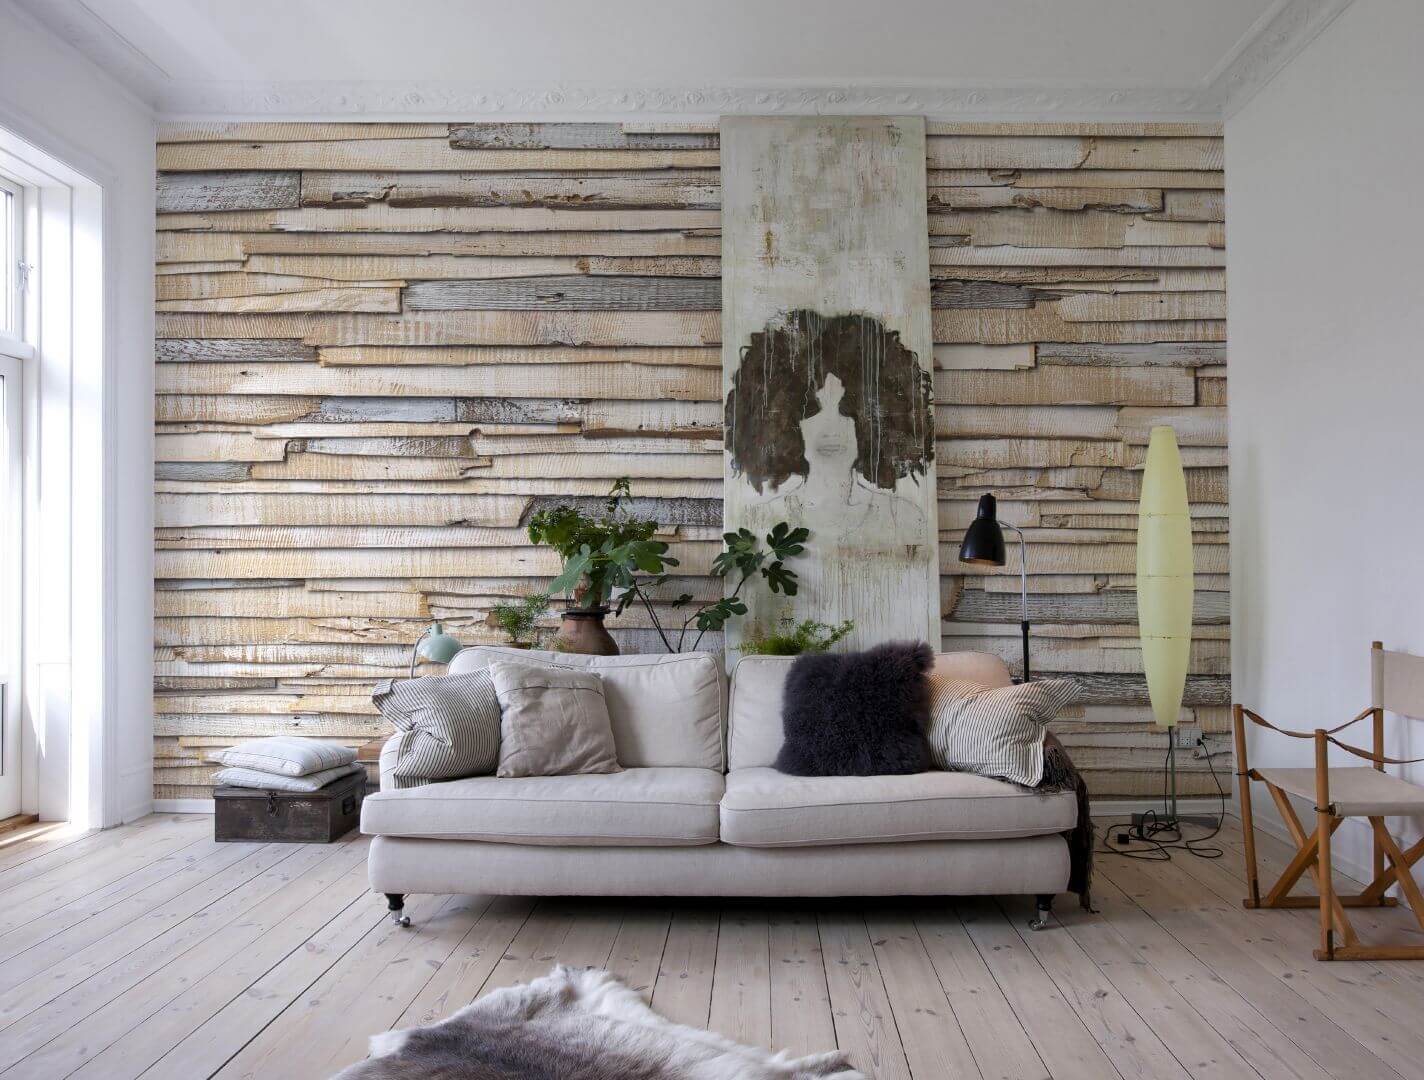 ТОП-5 вариантов декорирования стен деревом в квартире